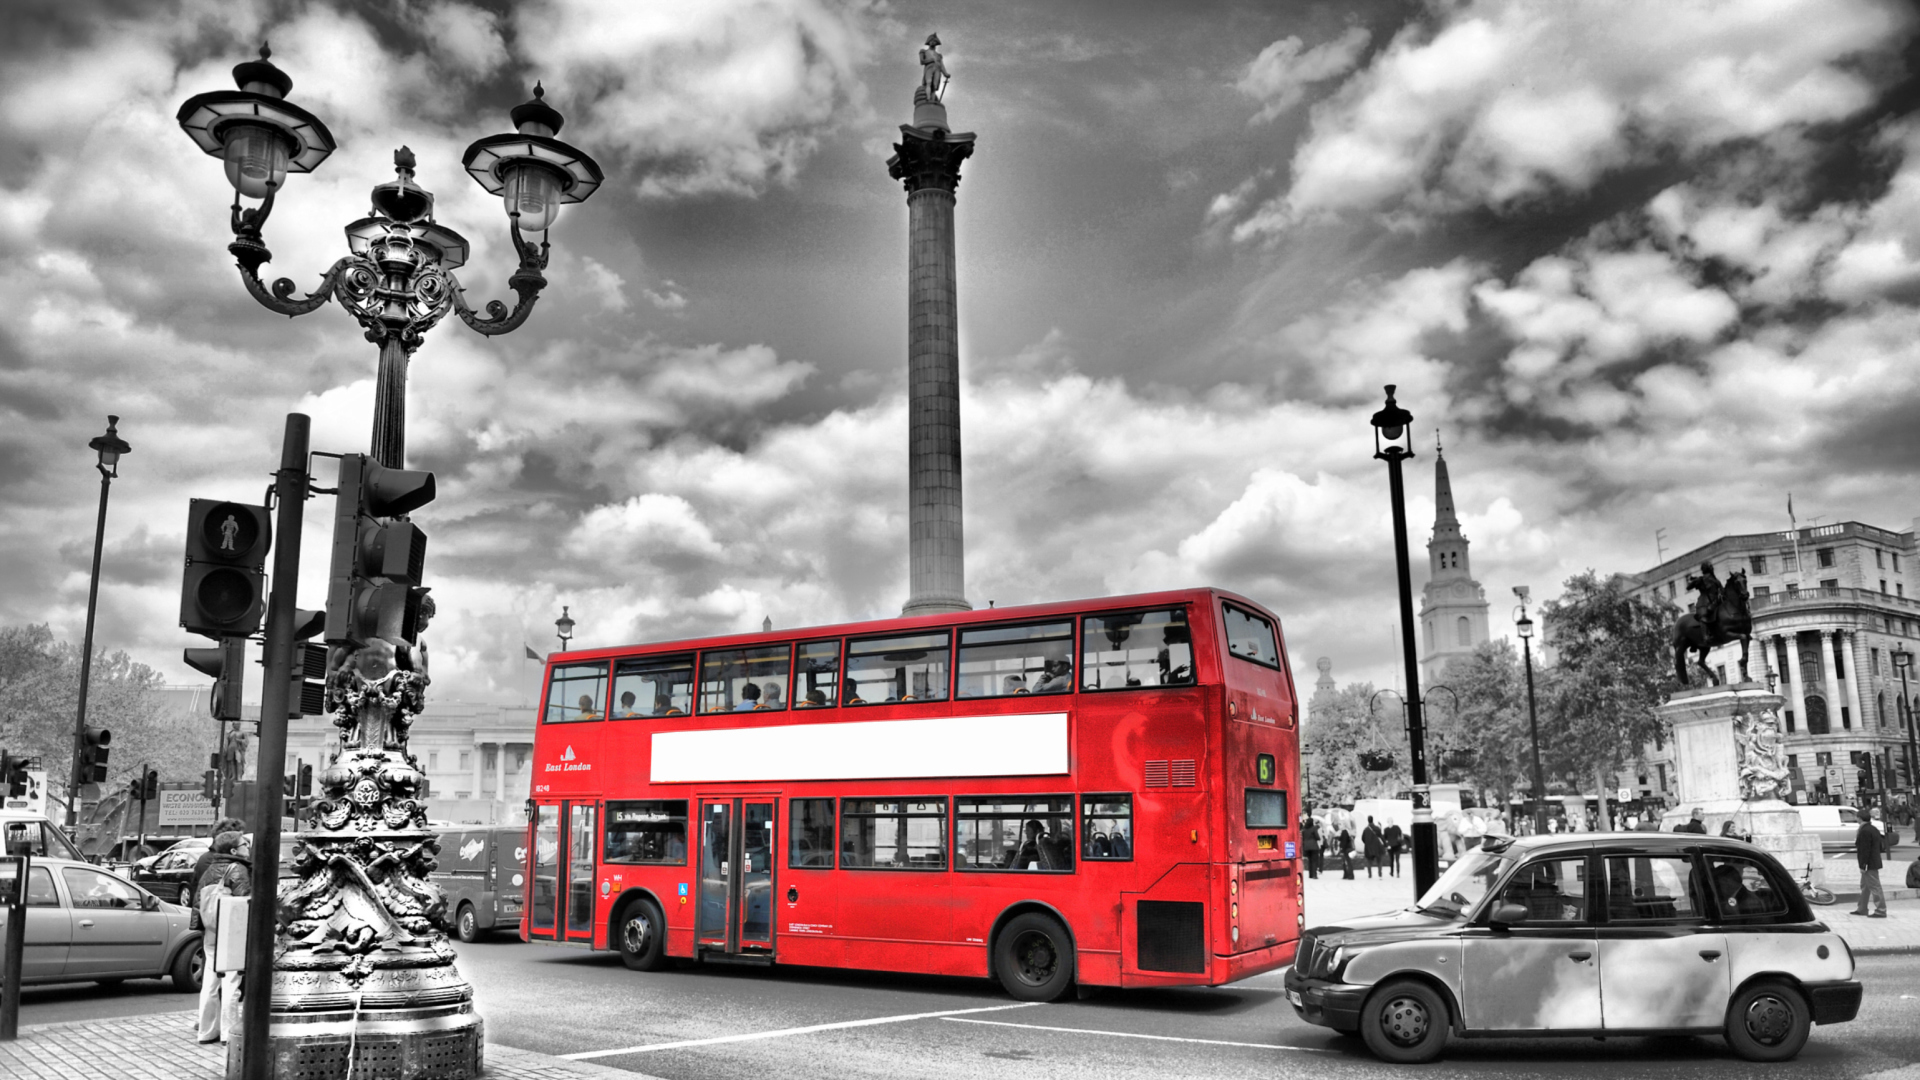 Sfondi Trafalgar Square London 1920x1080